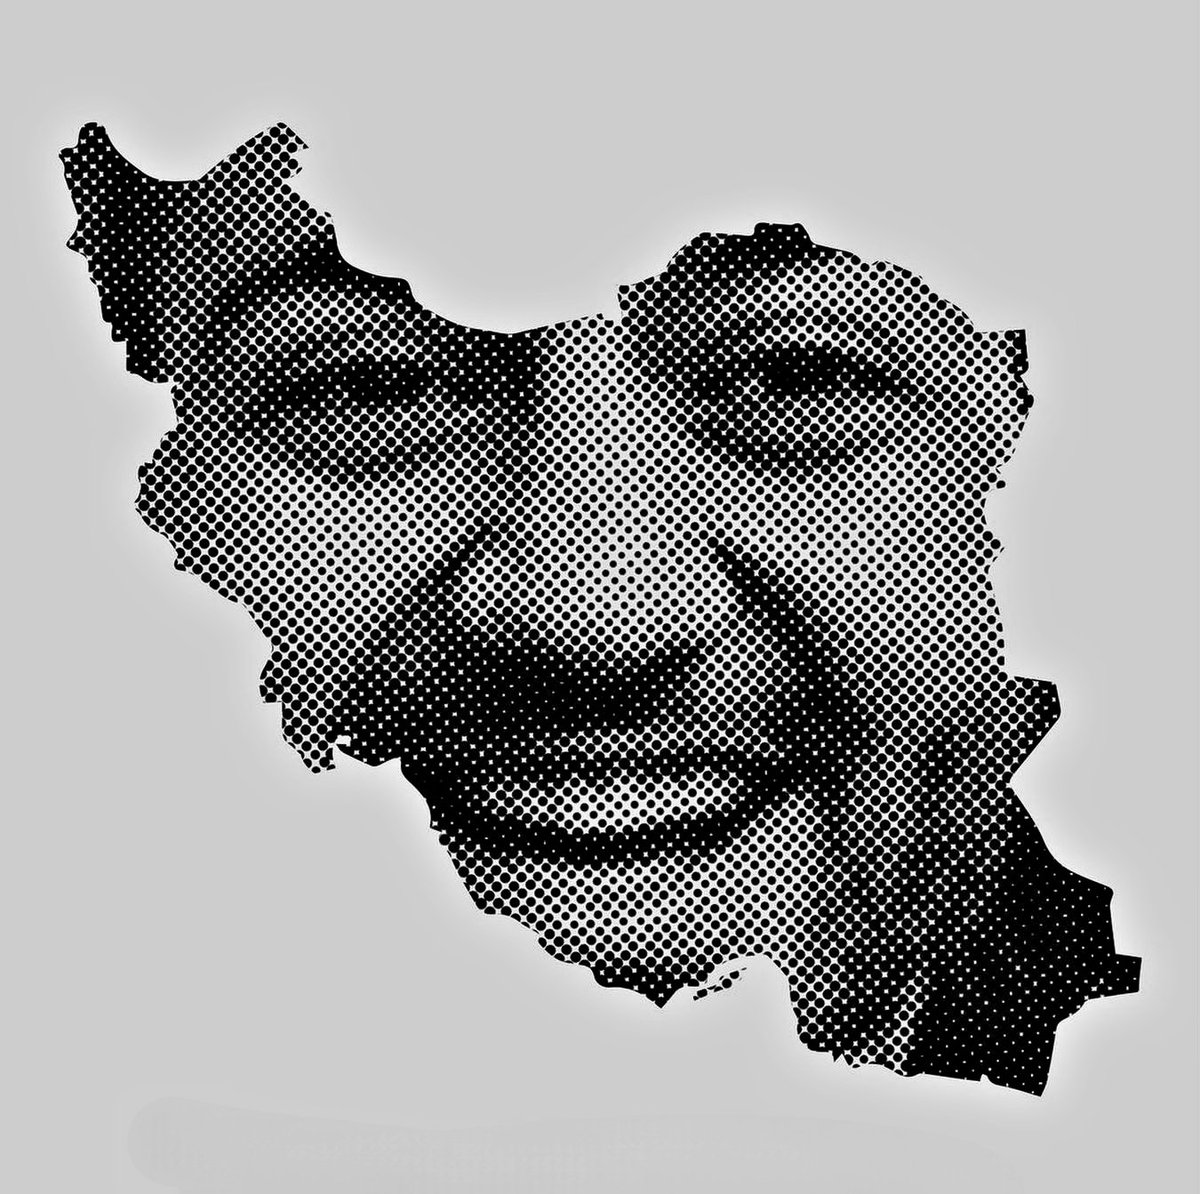 Le rire, la joie de vivre de Toomaj ne peuvent pas,  ne doivent pas s'éteindre 
#FreeToomaj‌ 
#FemmeVieLiberté